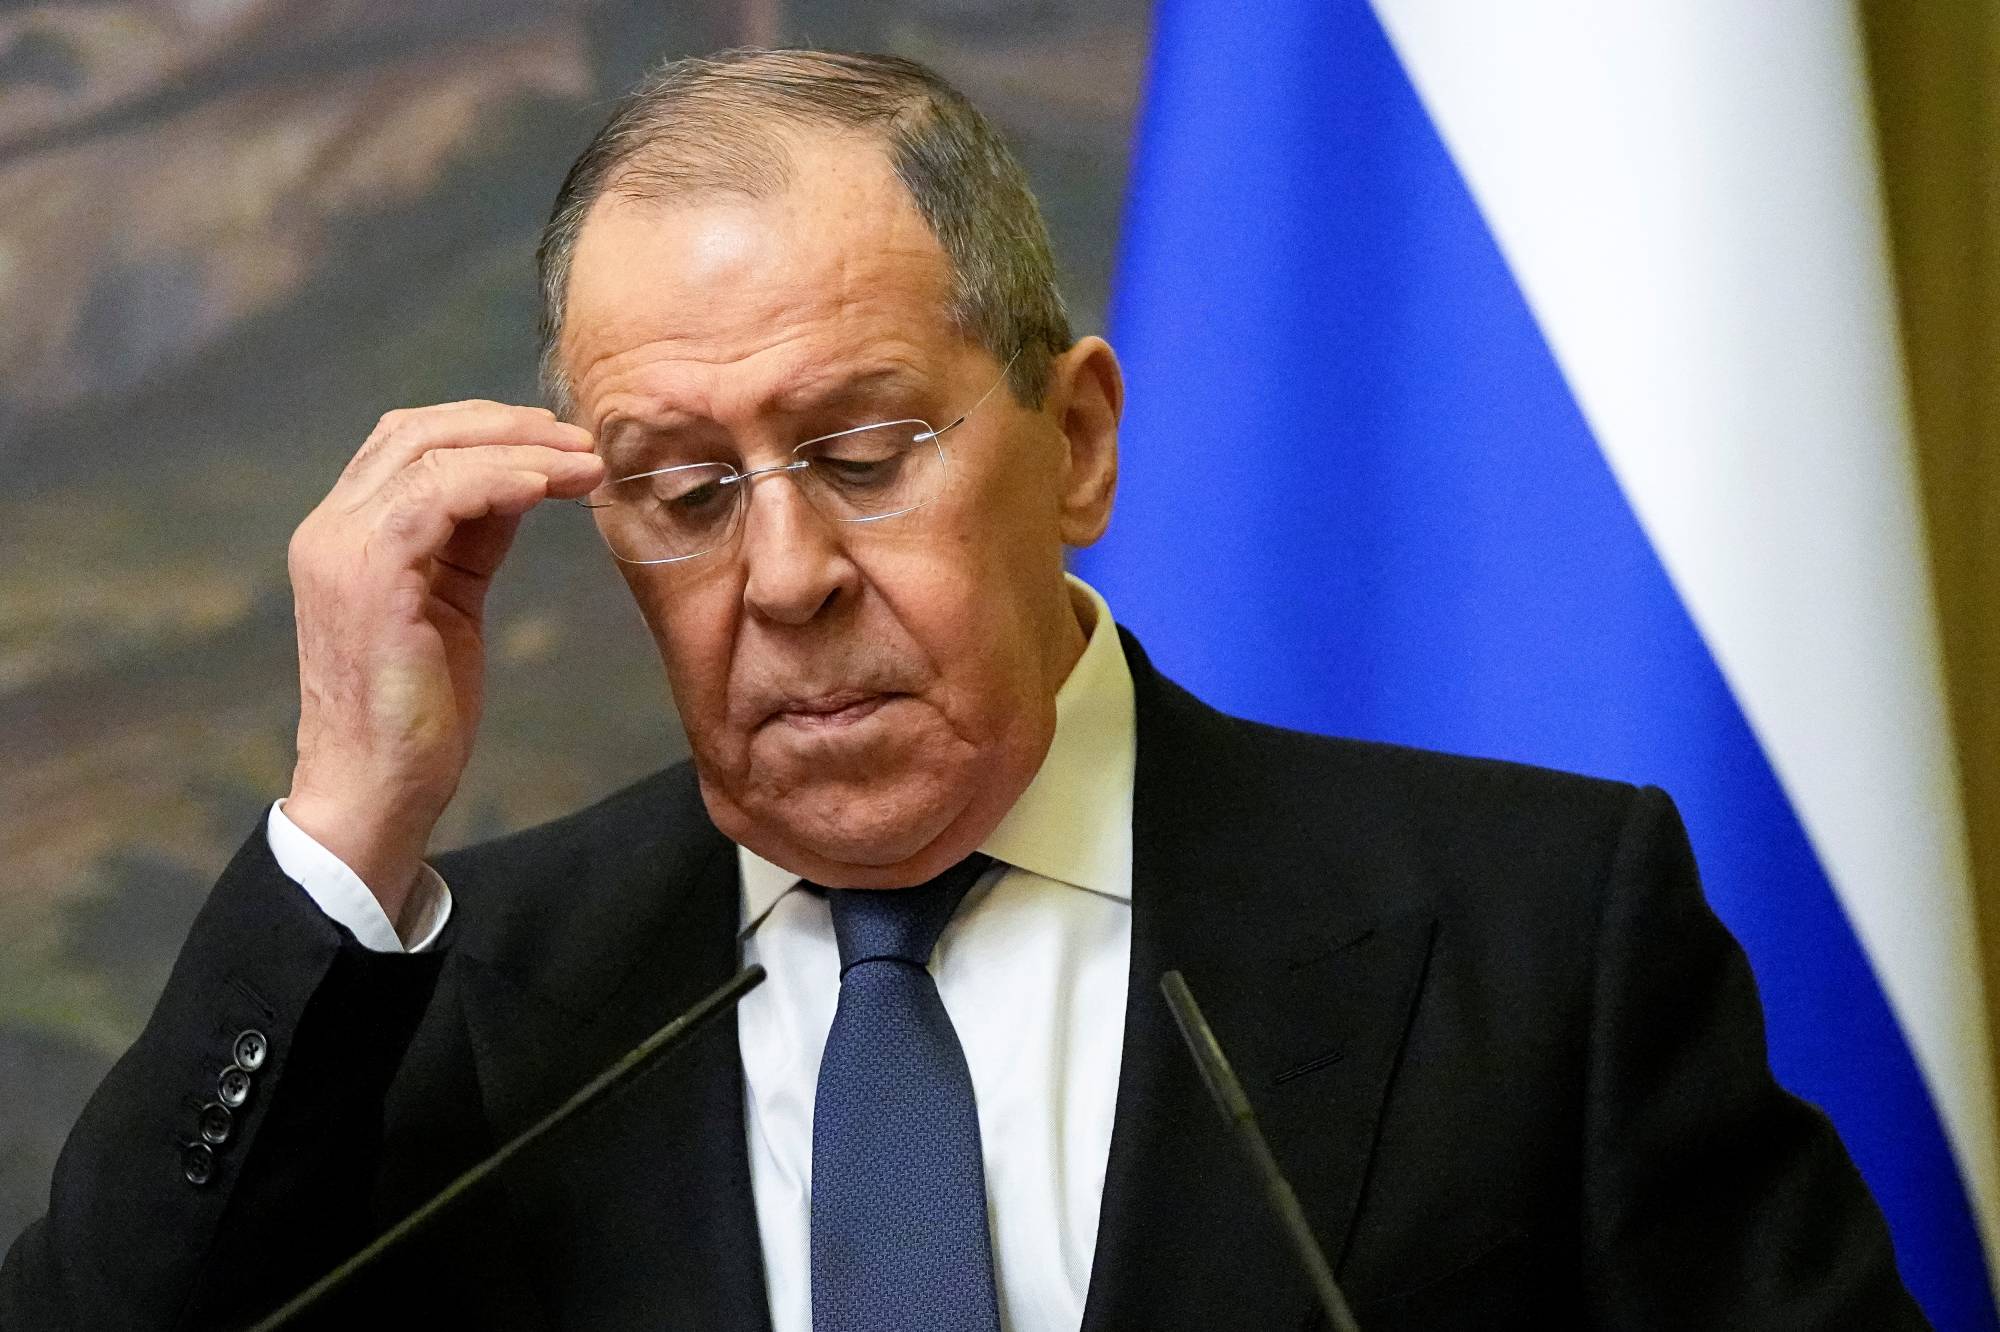 Lavrovun son çıxışının nəticələri: “ABŞ-a zərbə endirilir, Rusiya-İran əməkdaşlığı başlayır...”